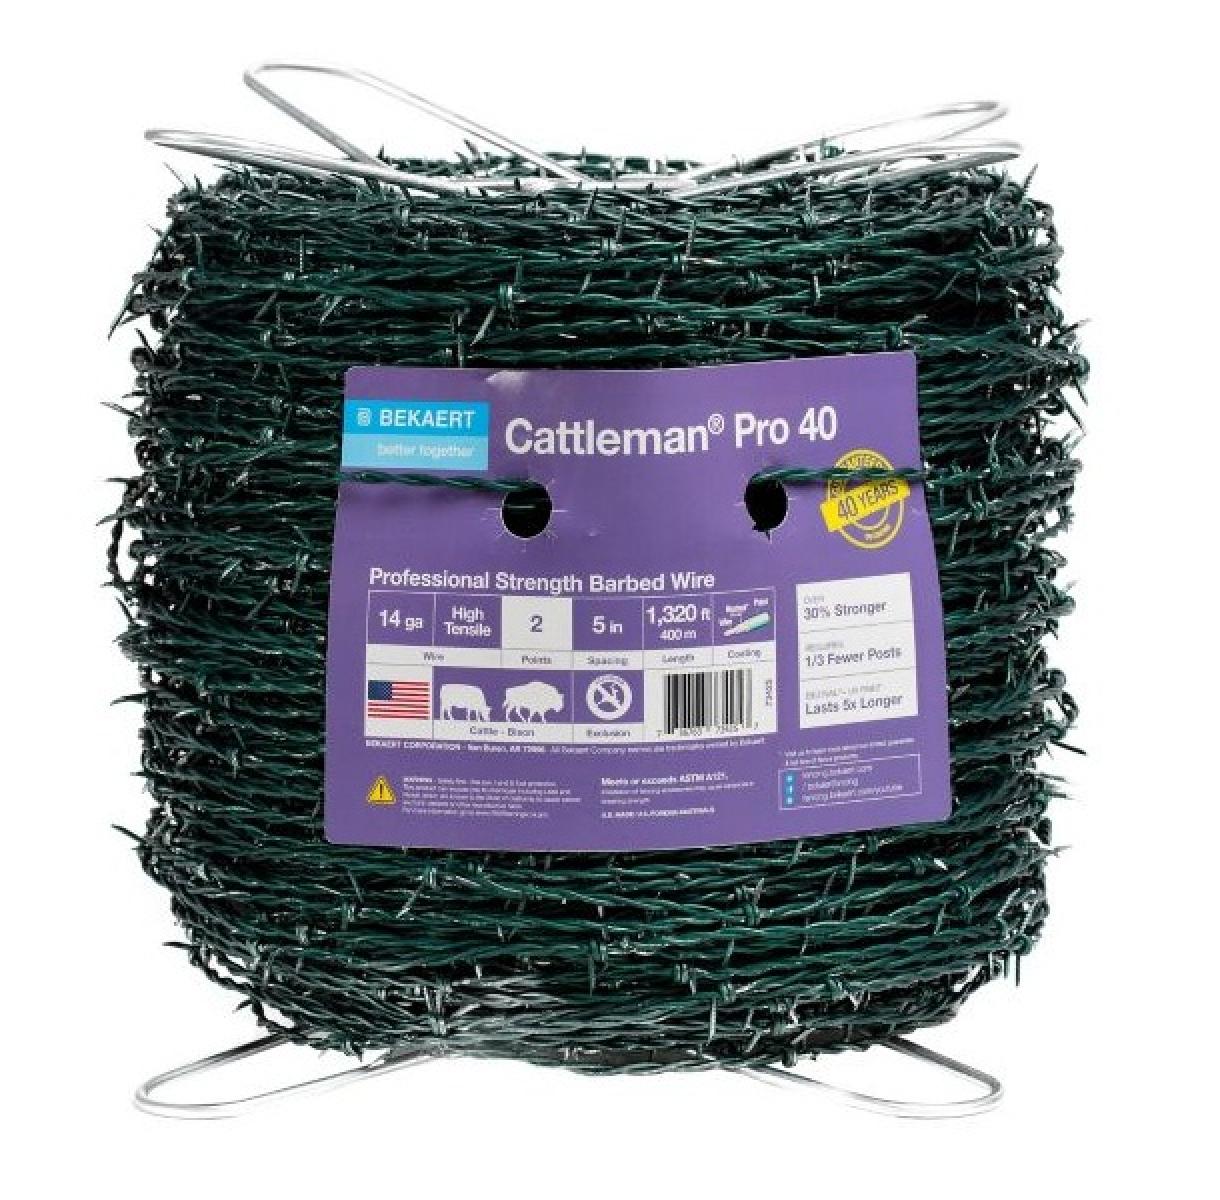 Bekaert Cattleman® Pro 40 Green High Tensile Barbed Wire